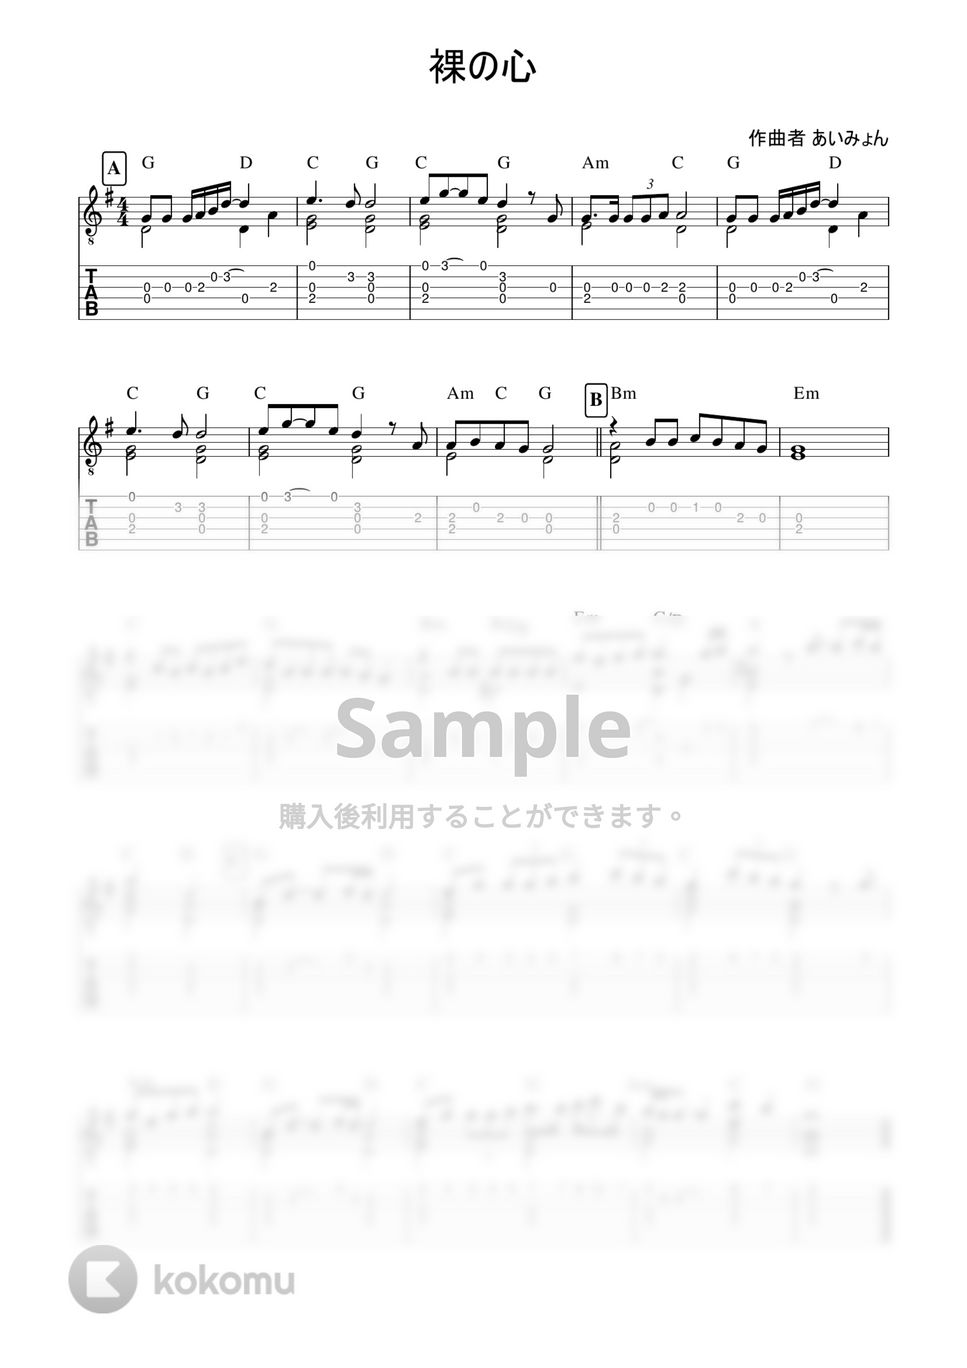 あいみょん - 裸の心 (4本弦で弾ける簡単ソロギター) by 早乙女浩司